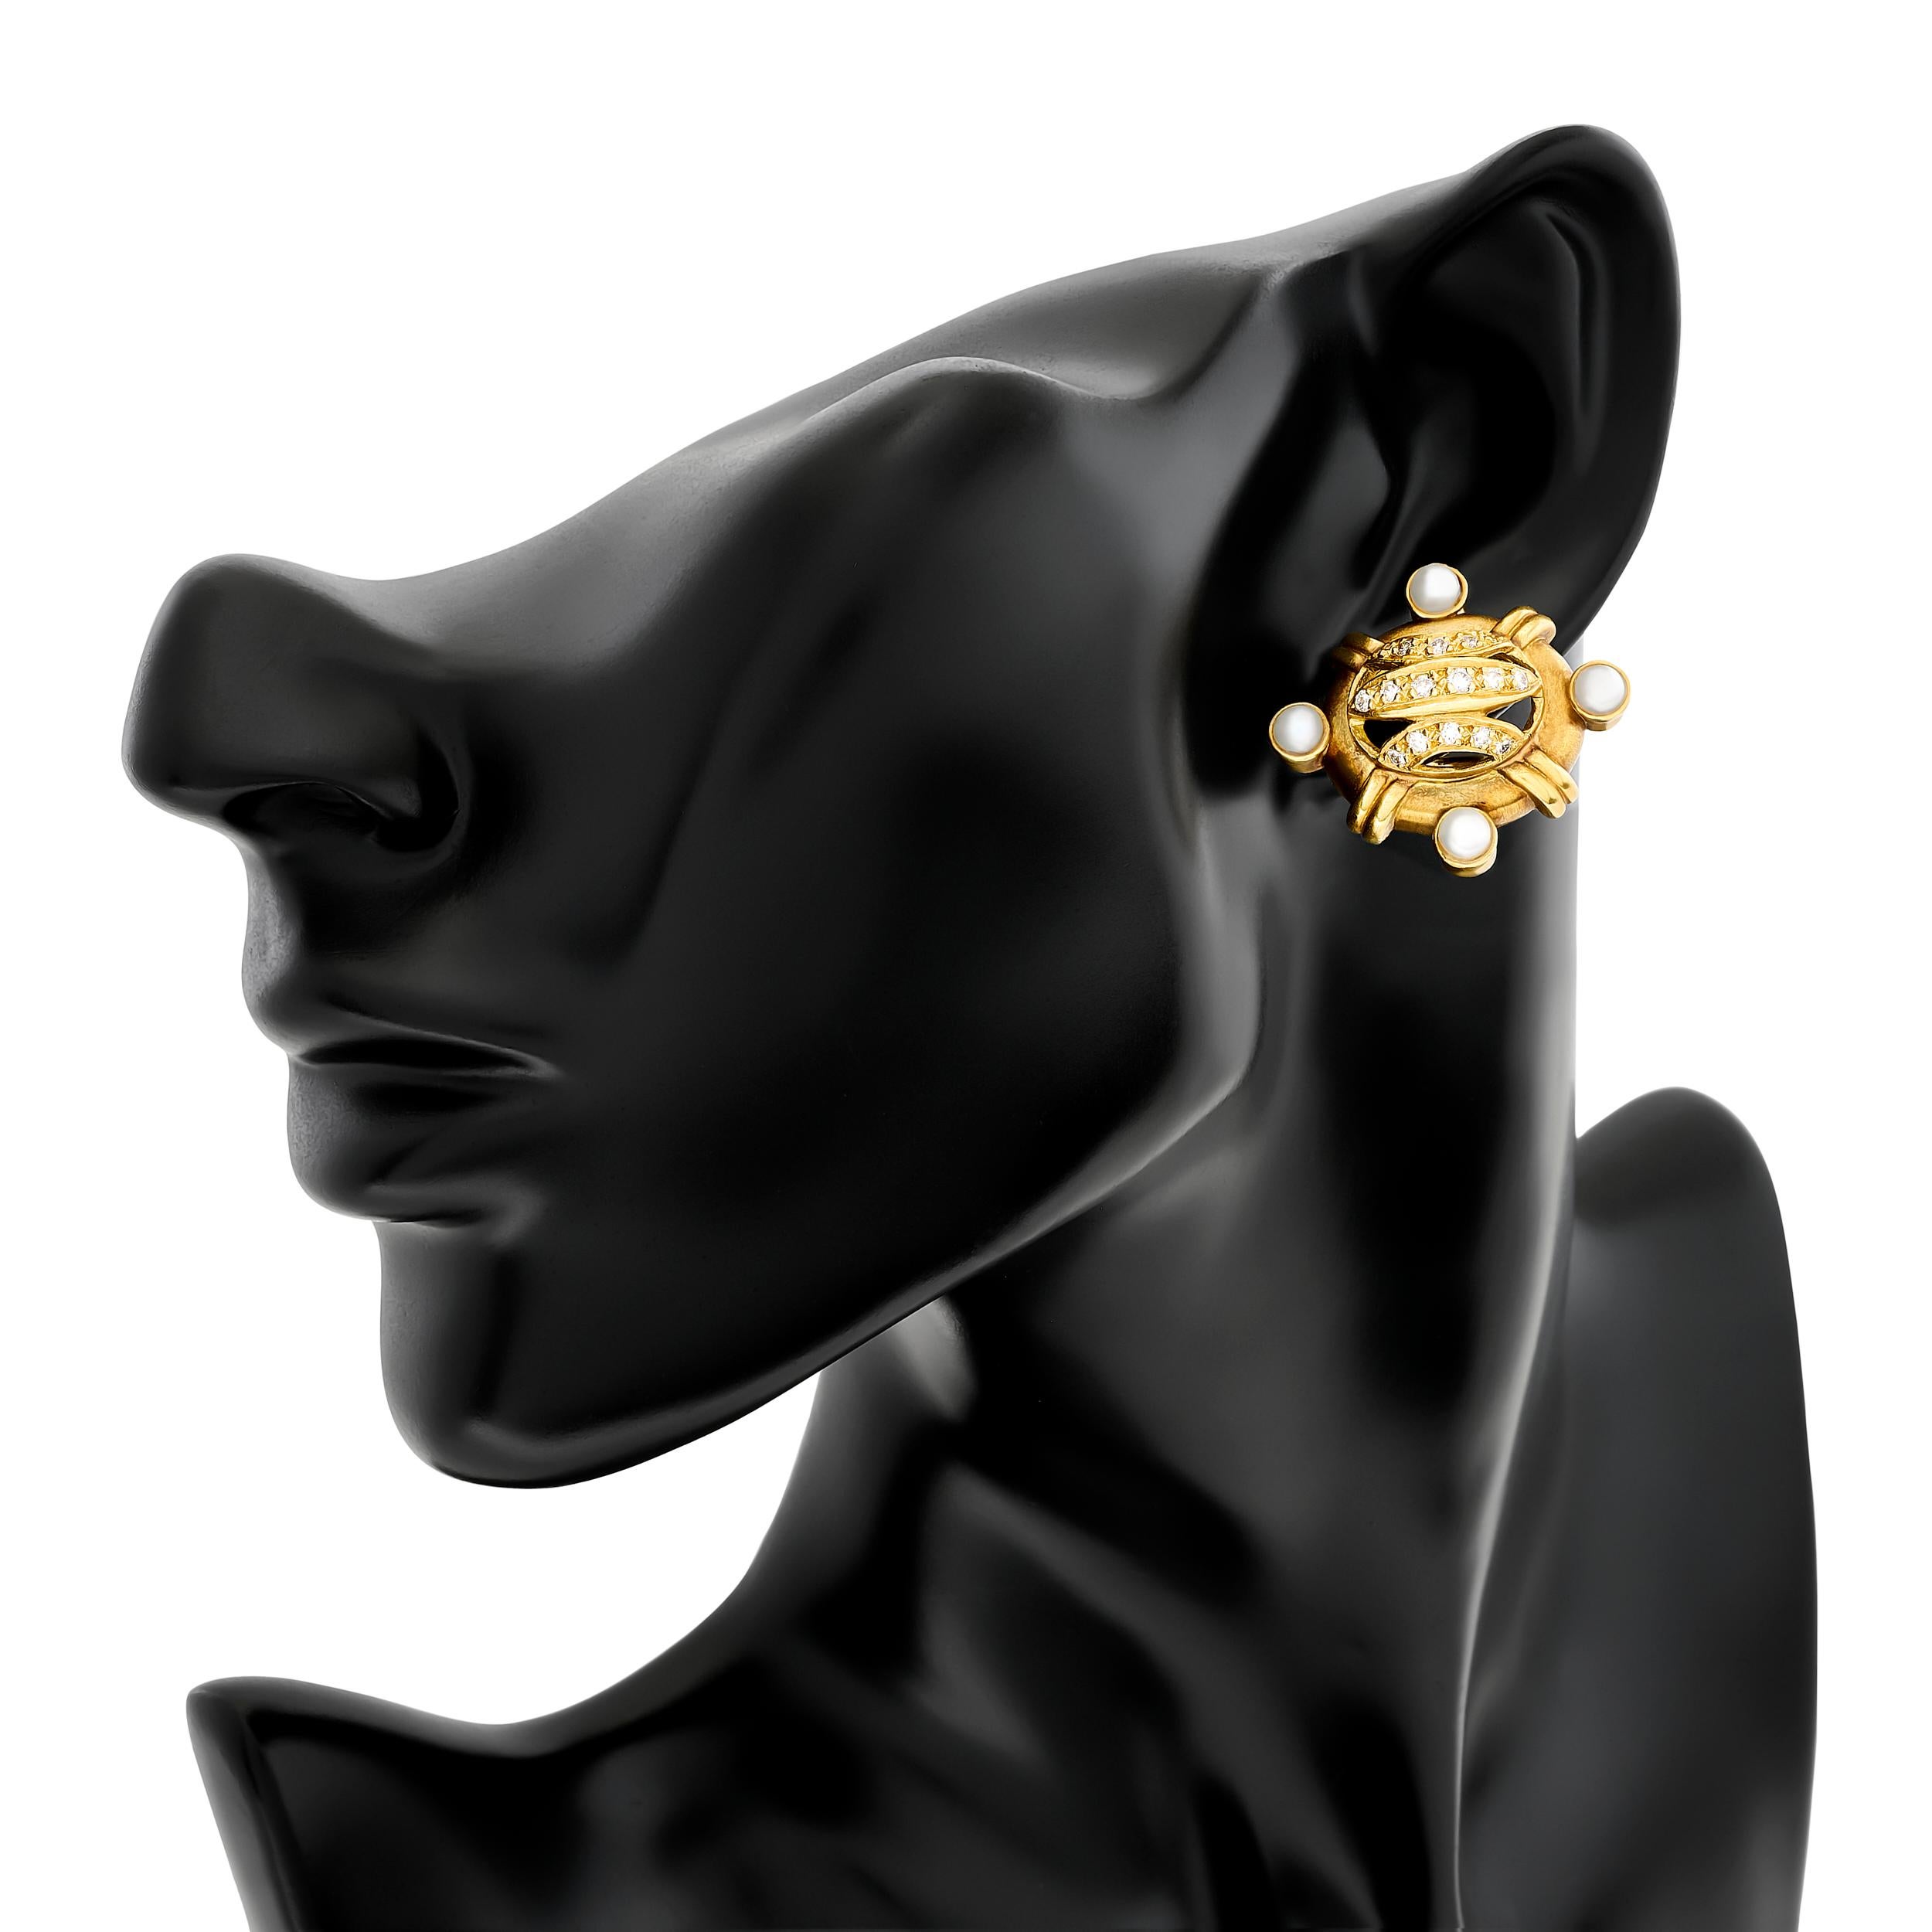 Die Gelbgold-Ohrringe von Doris Panos bestechen durch ihr einzigartiges Design mit Diamanten und Perlen, die in den Himmelsrichtungen angeordnet sind.

Diese Ohrringe haben 32 runde Diamanten mit einem Gewicht von ca. 0,75 Karat, der Farbe H-I und